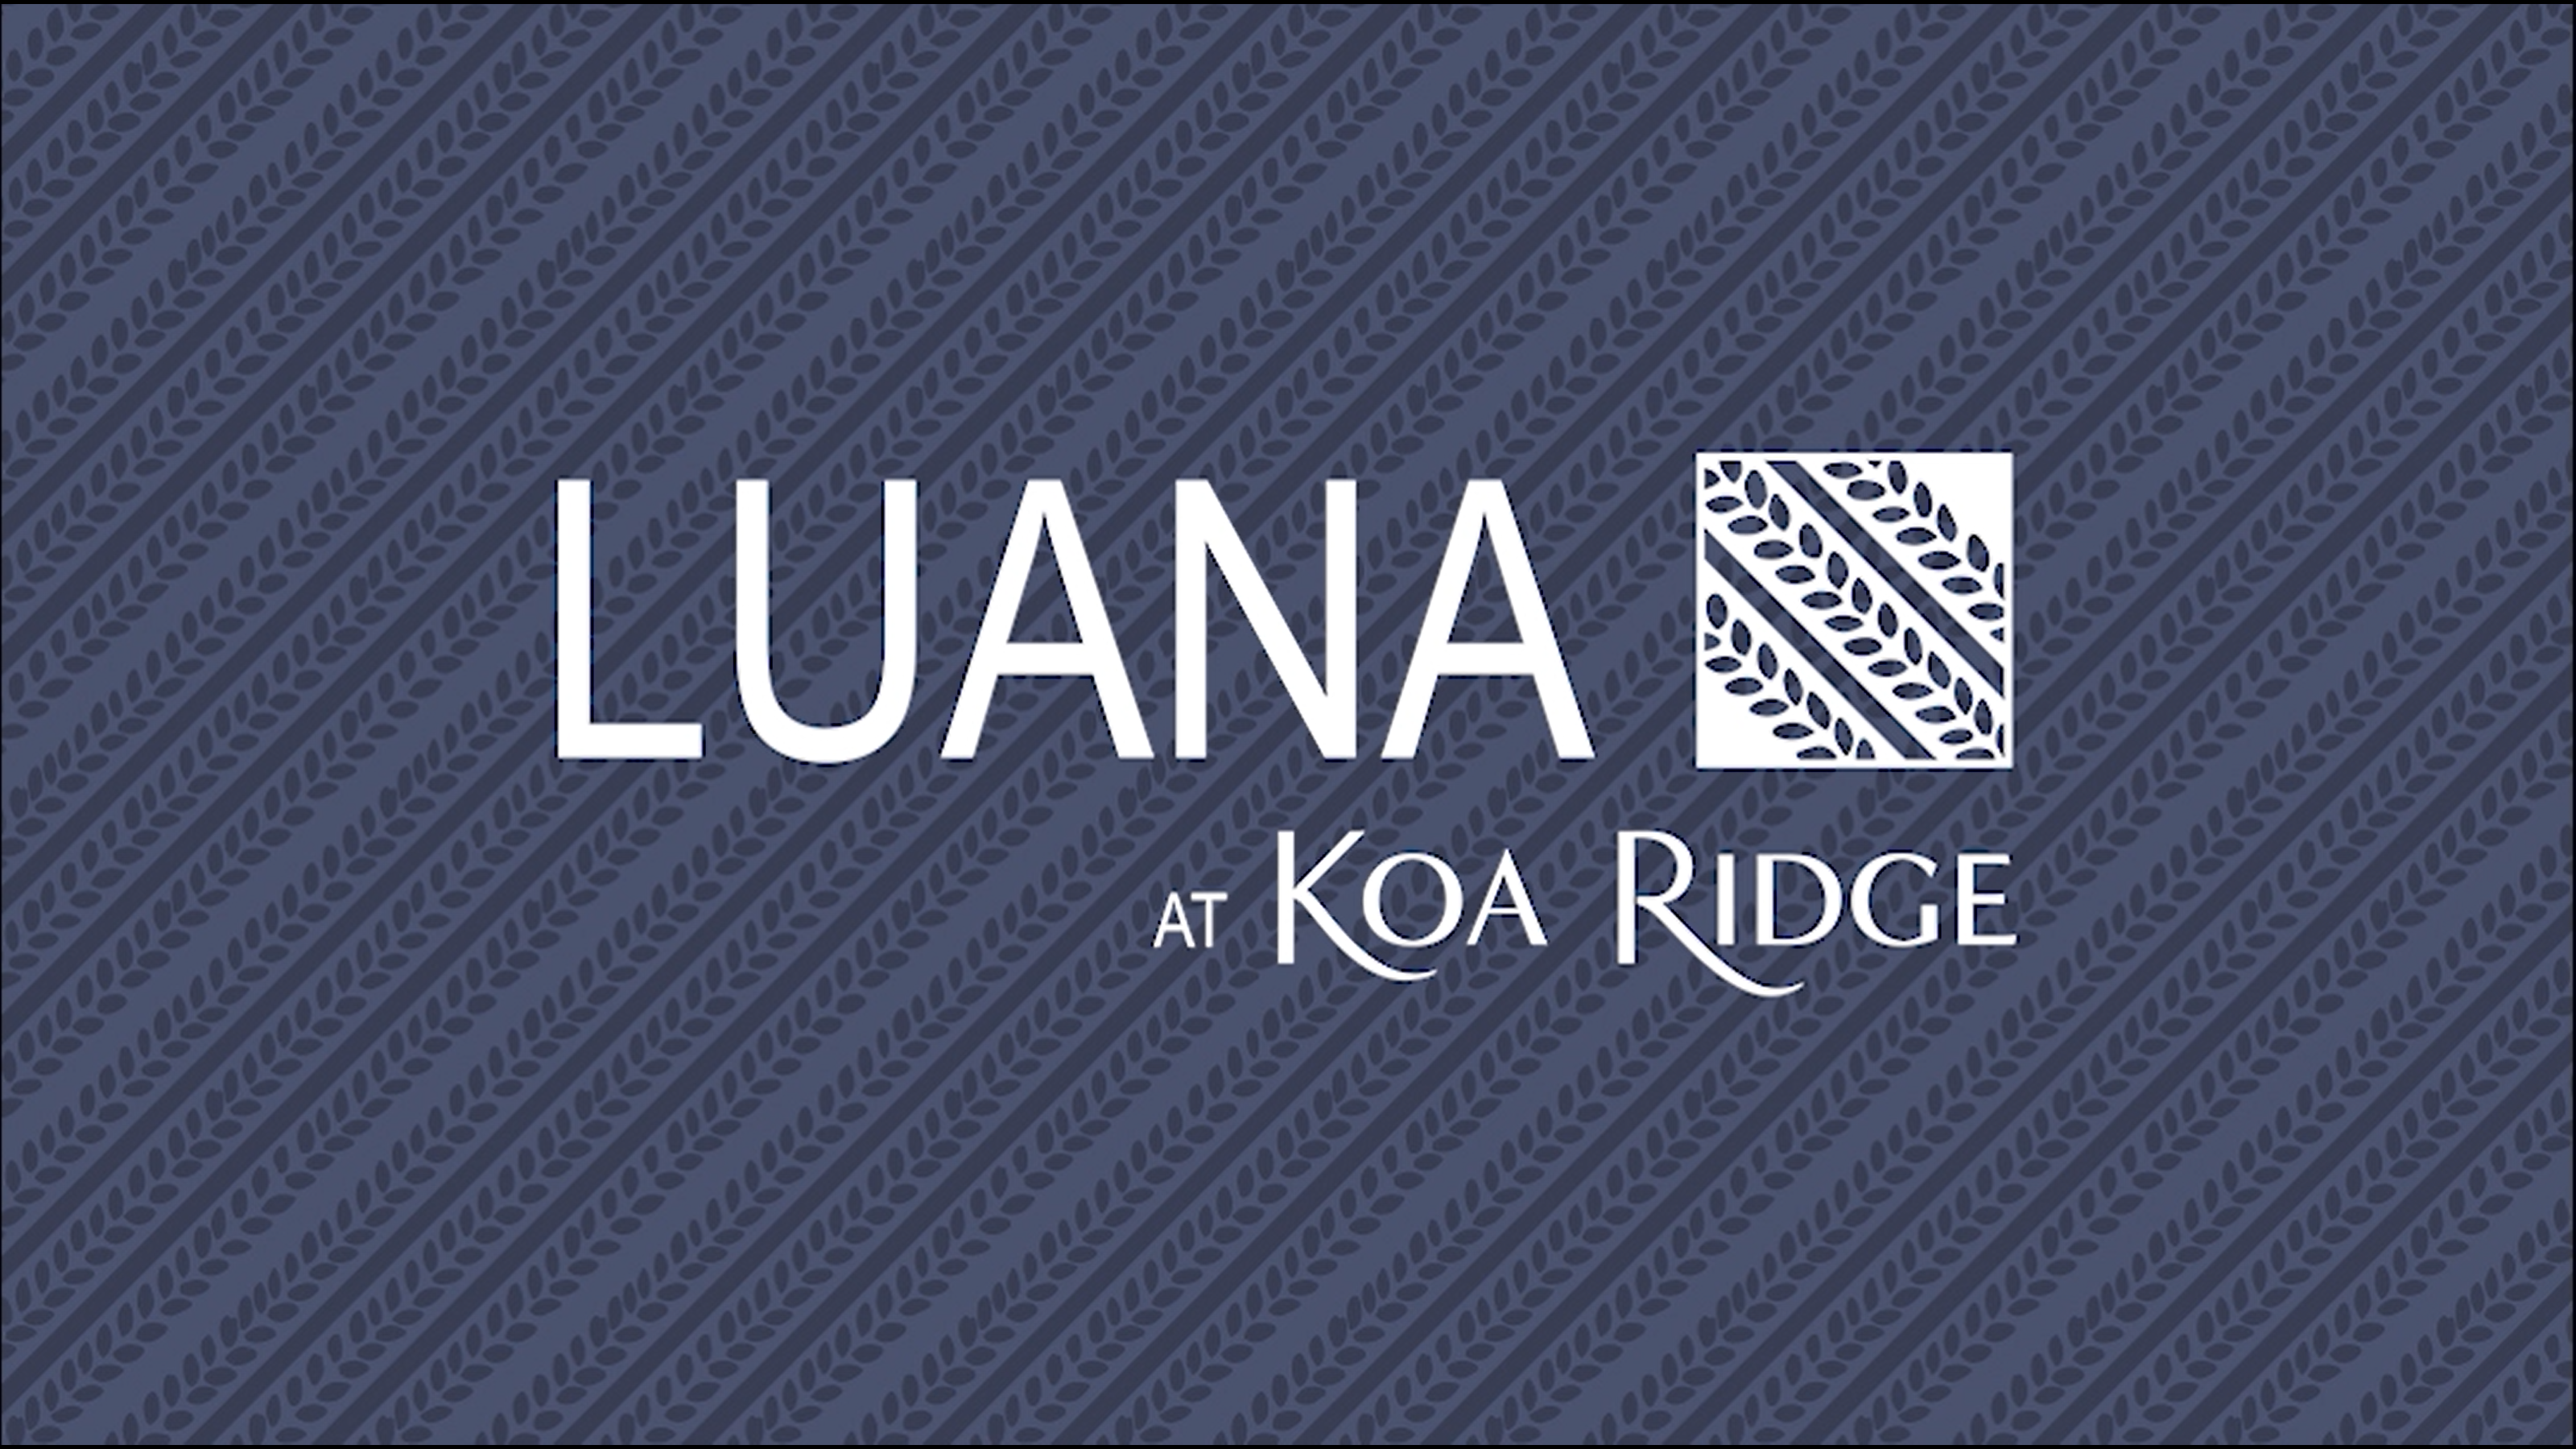 Hawaii Brand Radio - Luana at Koa Ridge